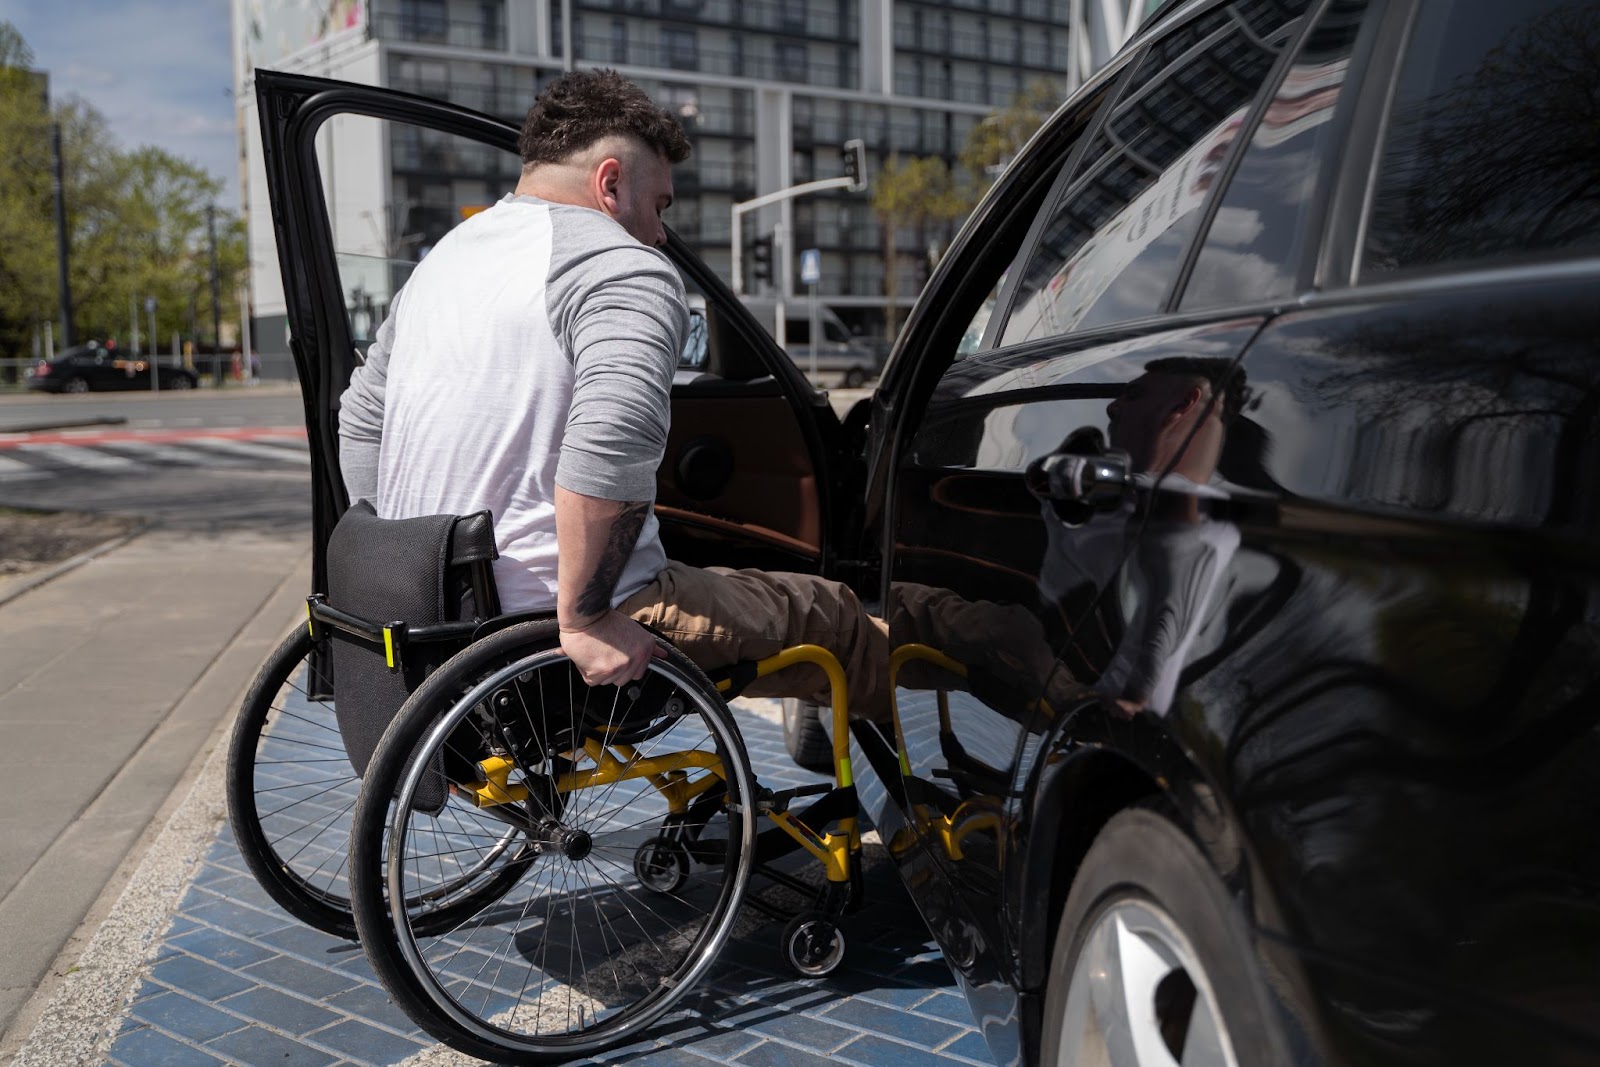 Na imagem, há um homem em uma cadeira de rodas entrando em um carro modificado, que possui o certificado de segurança veicular, estacionado em vaga preferencial.